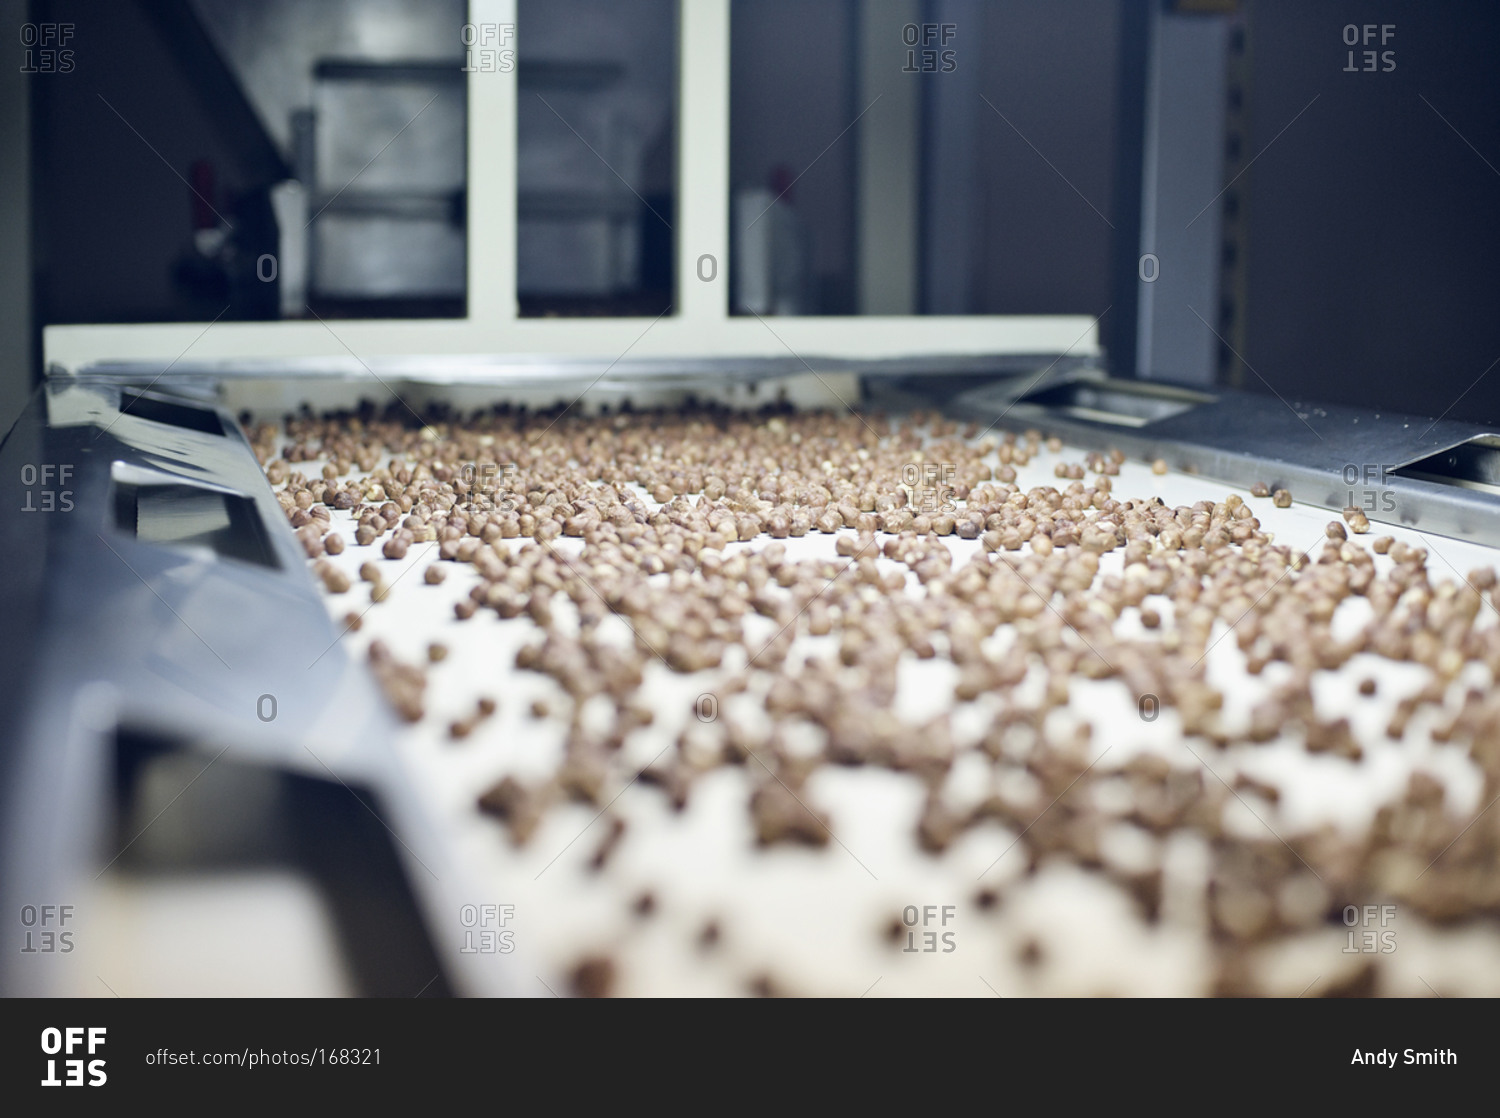 Hazelnuts on conveyor belt in factory